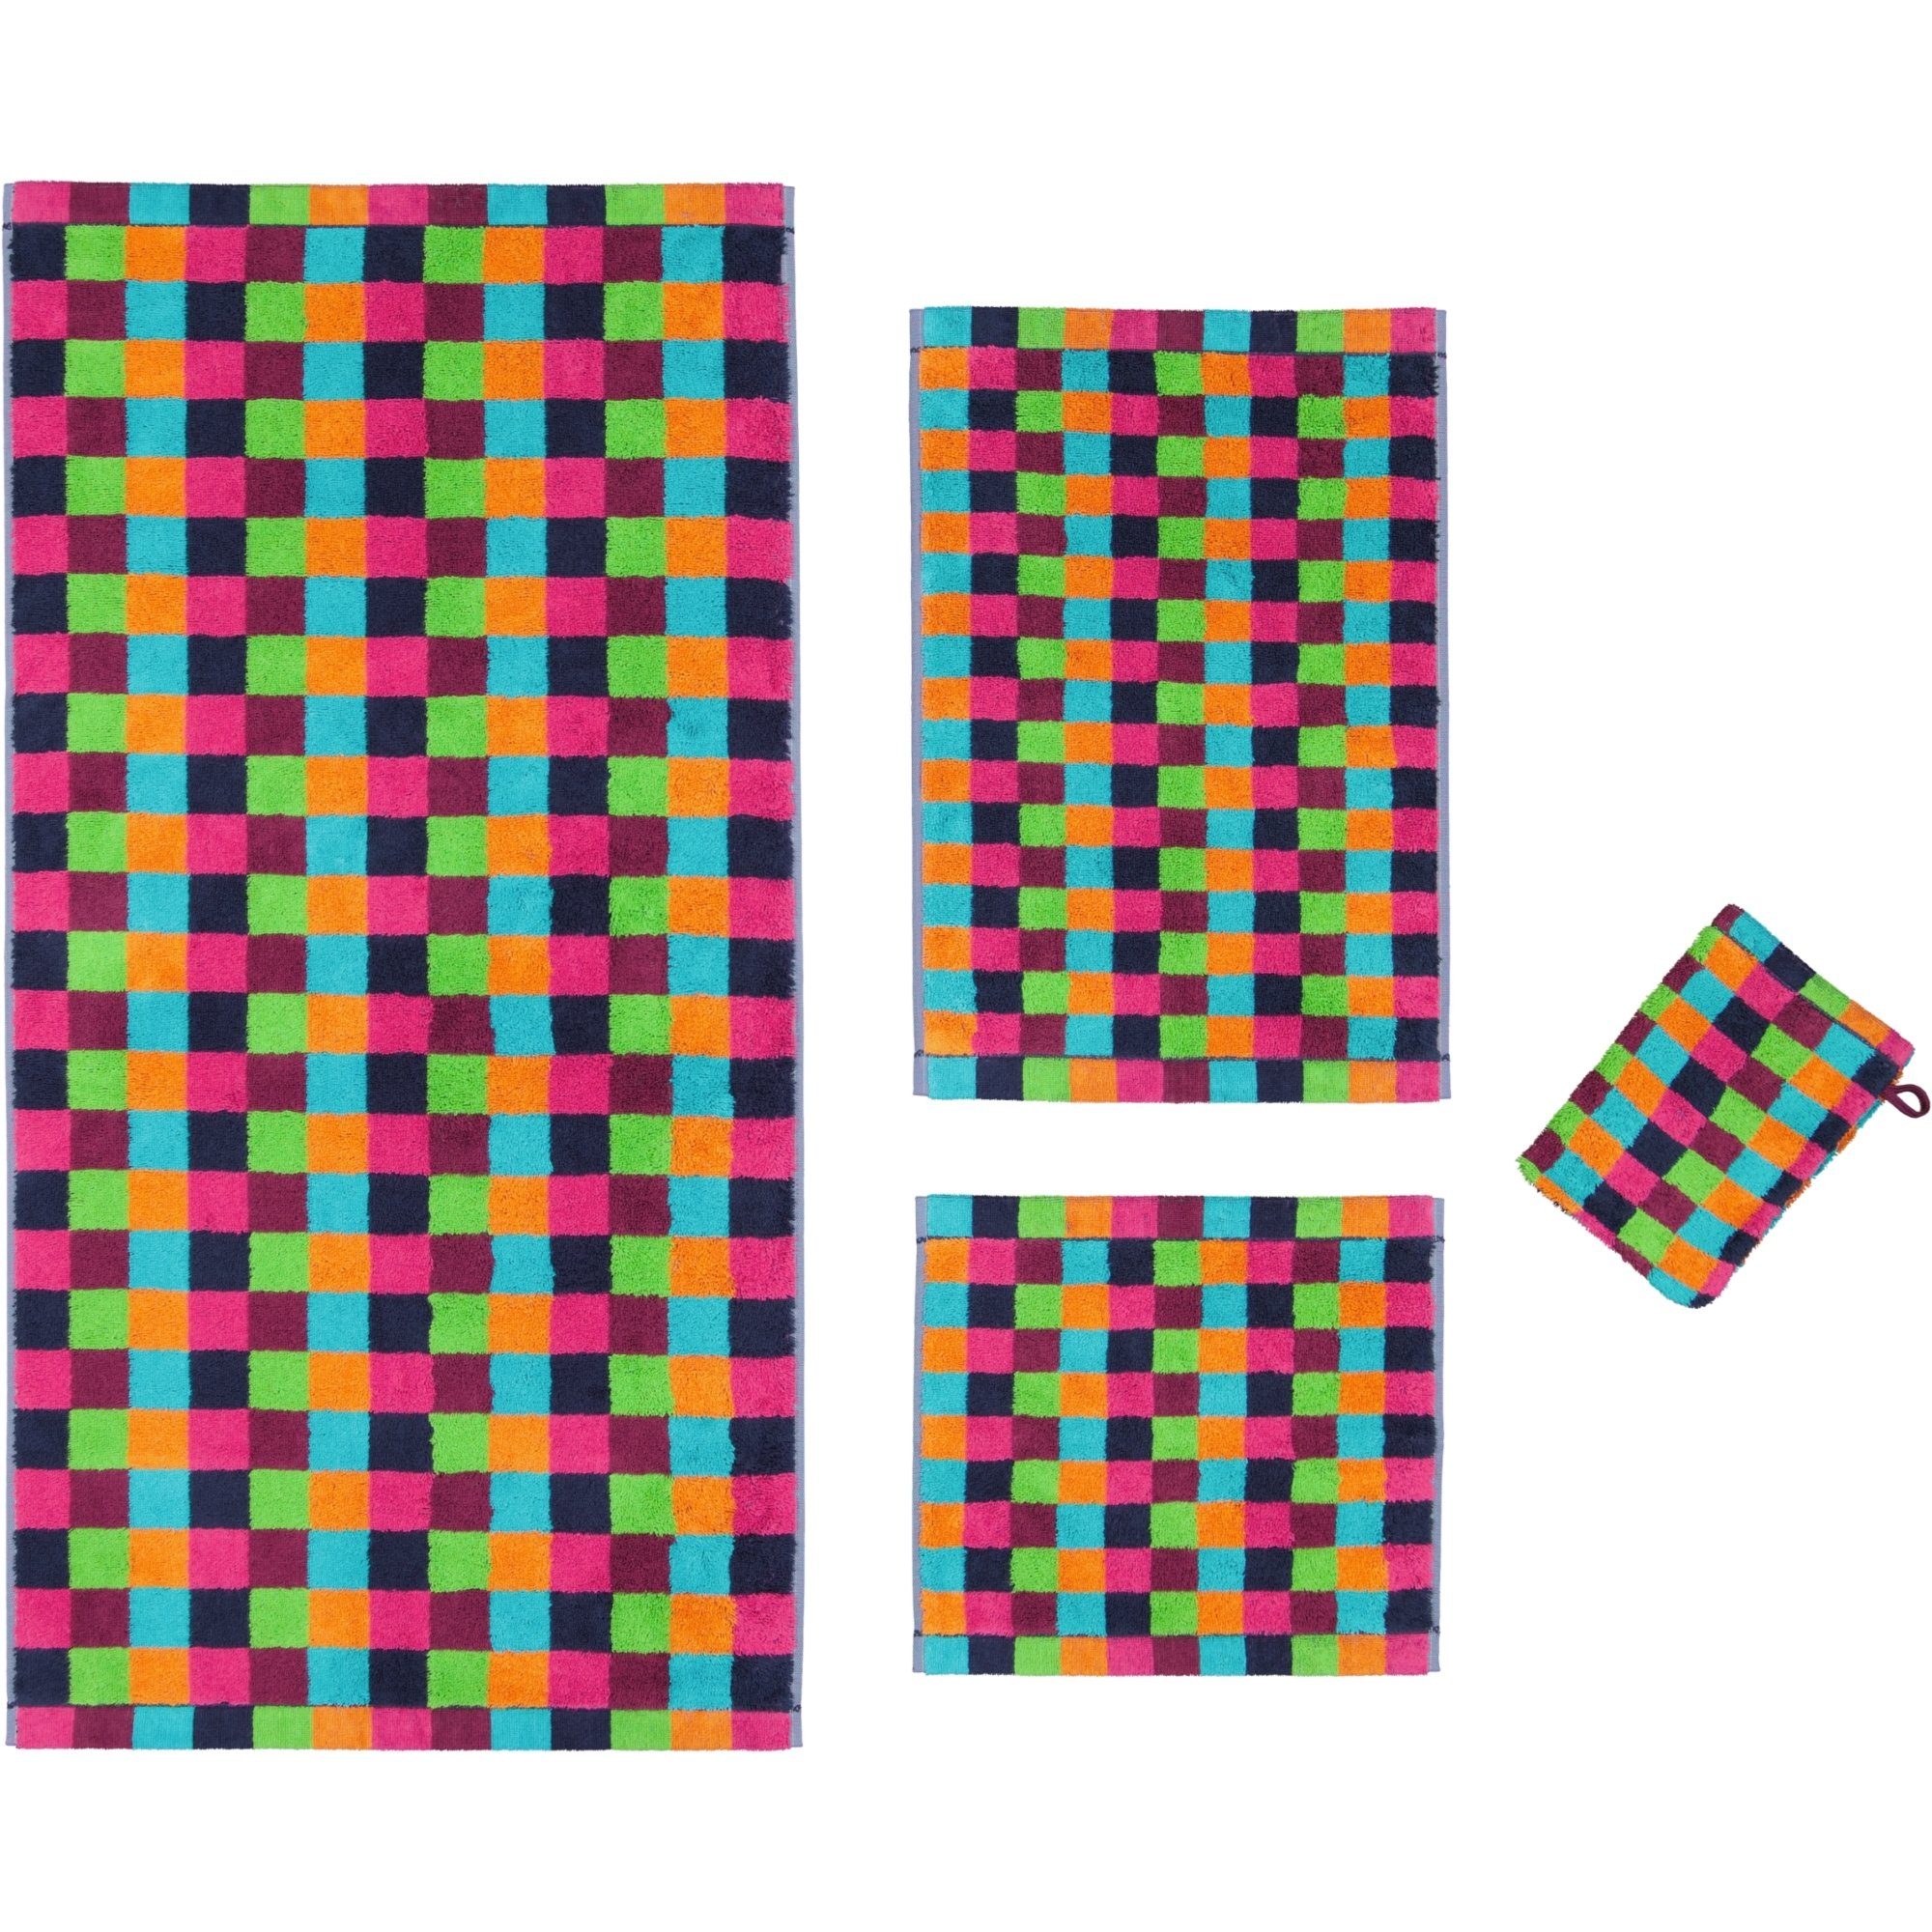 Cawö Handtücher multicolor 7047, Life 100% 84 Karo - Baumwolle Style